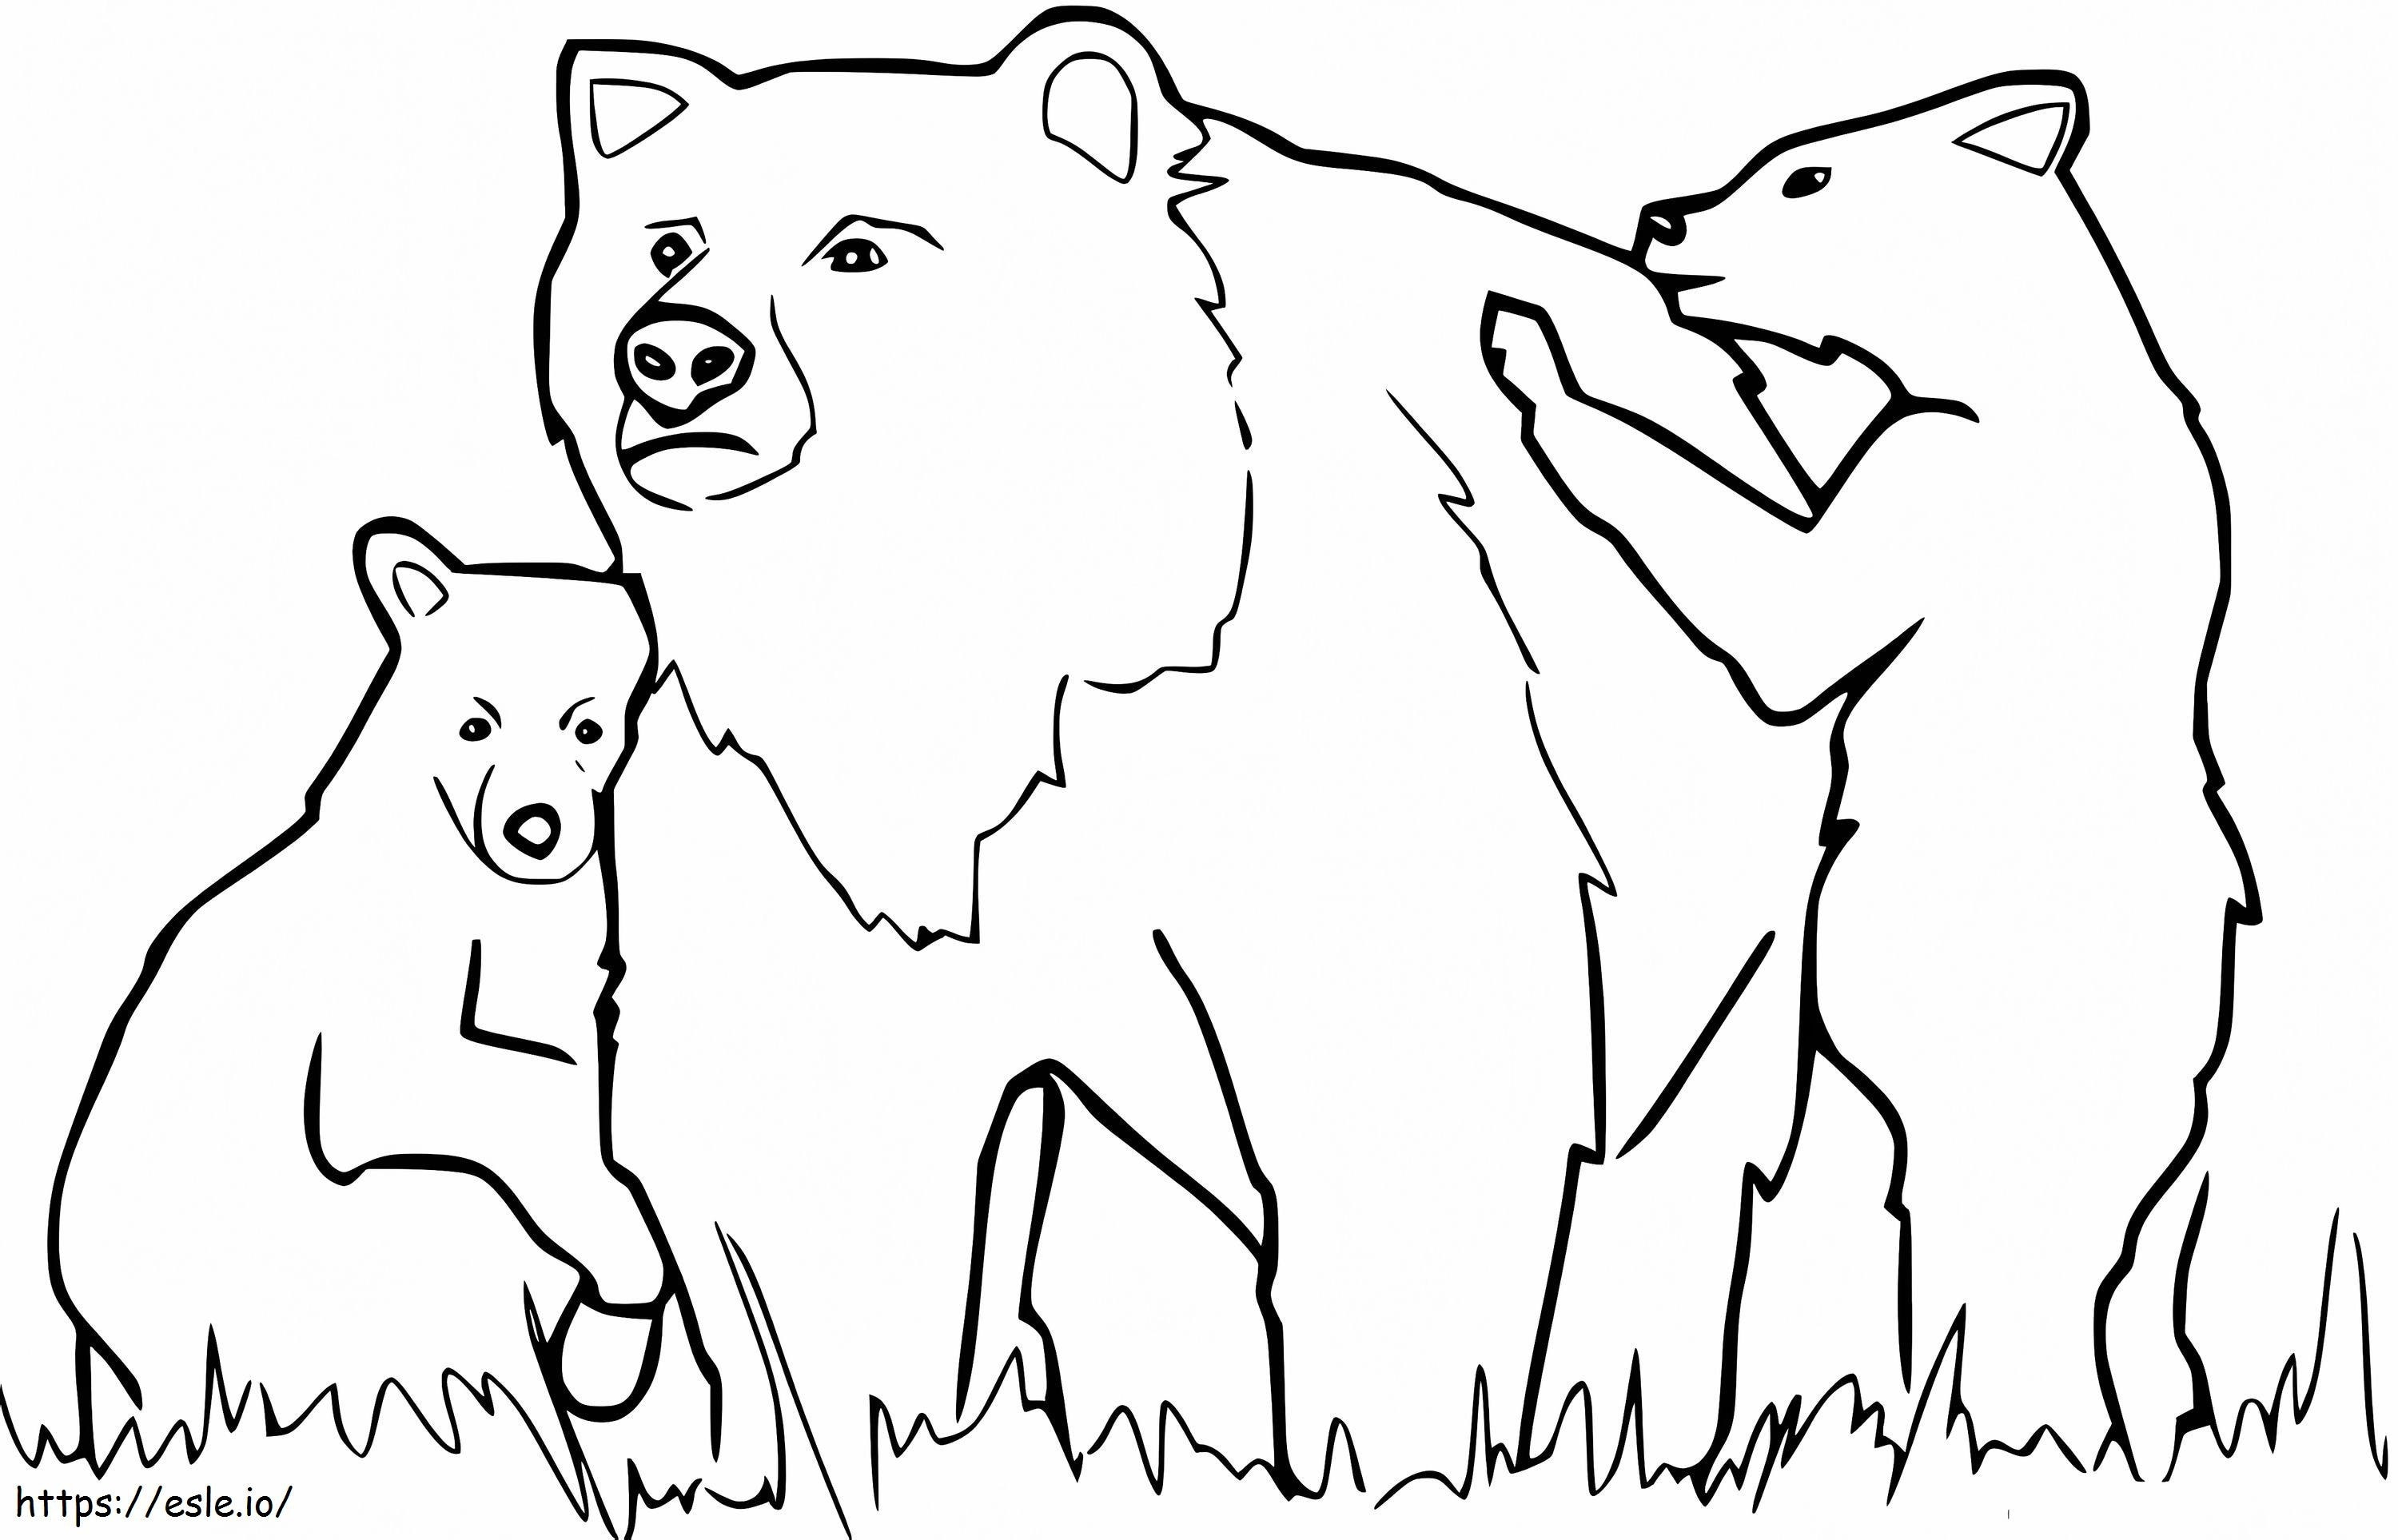 Familia Urșilor Negri de colorat